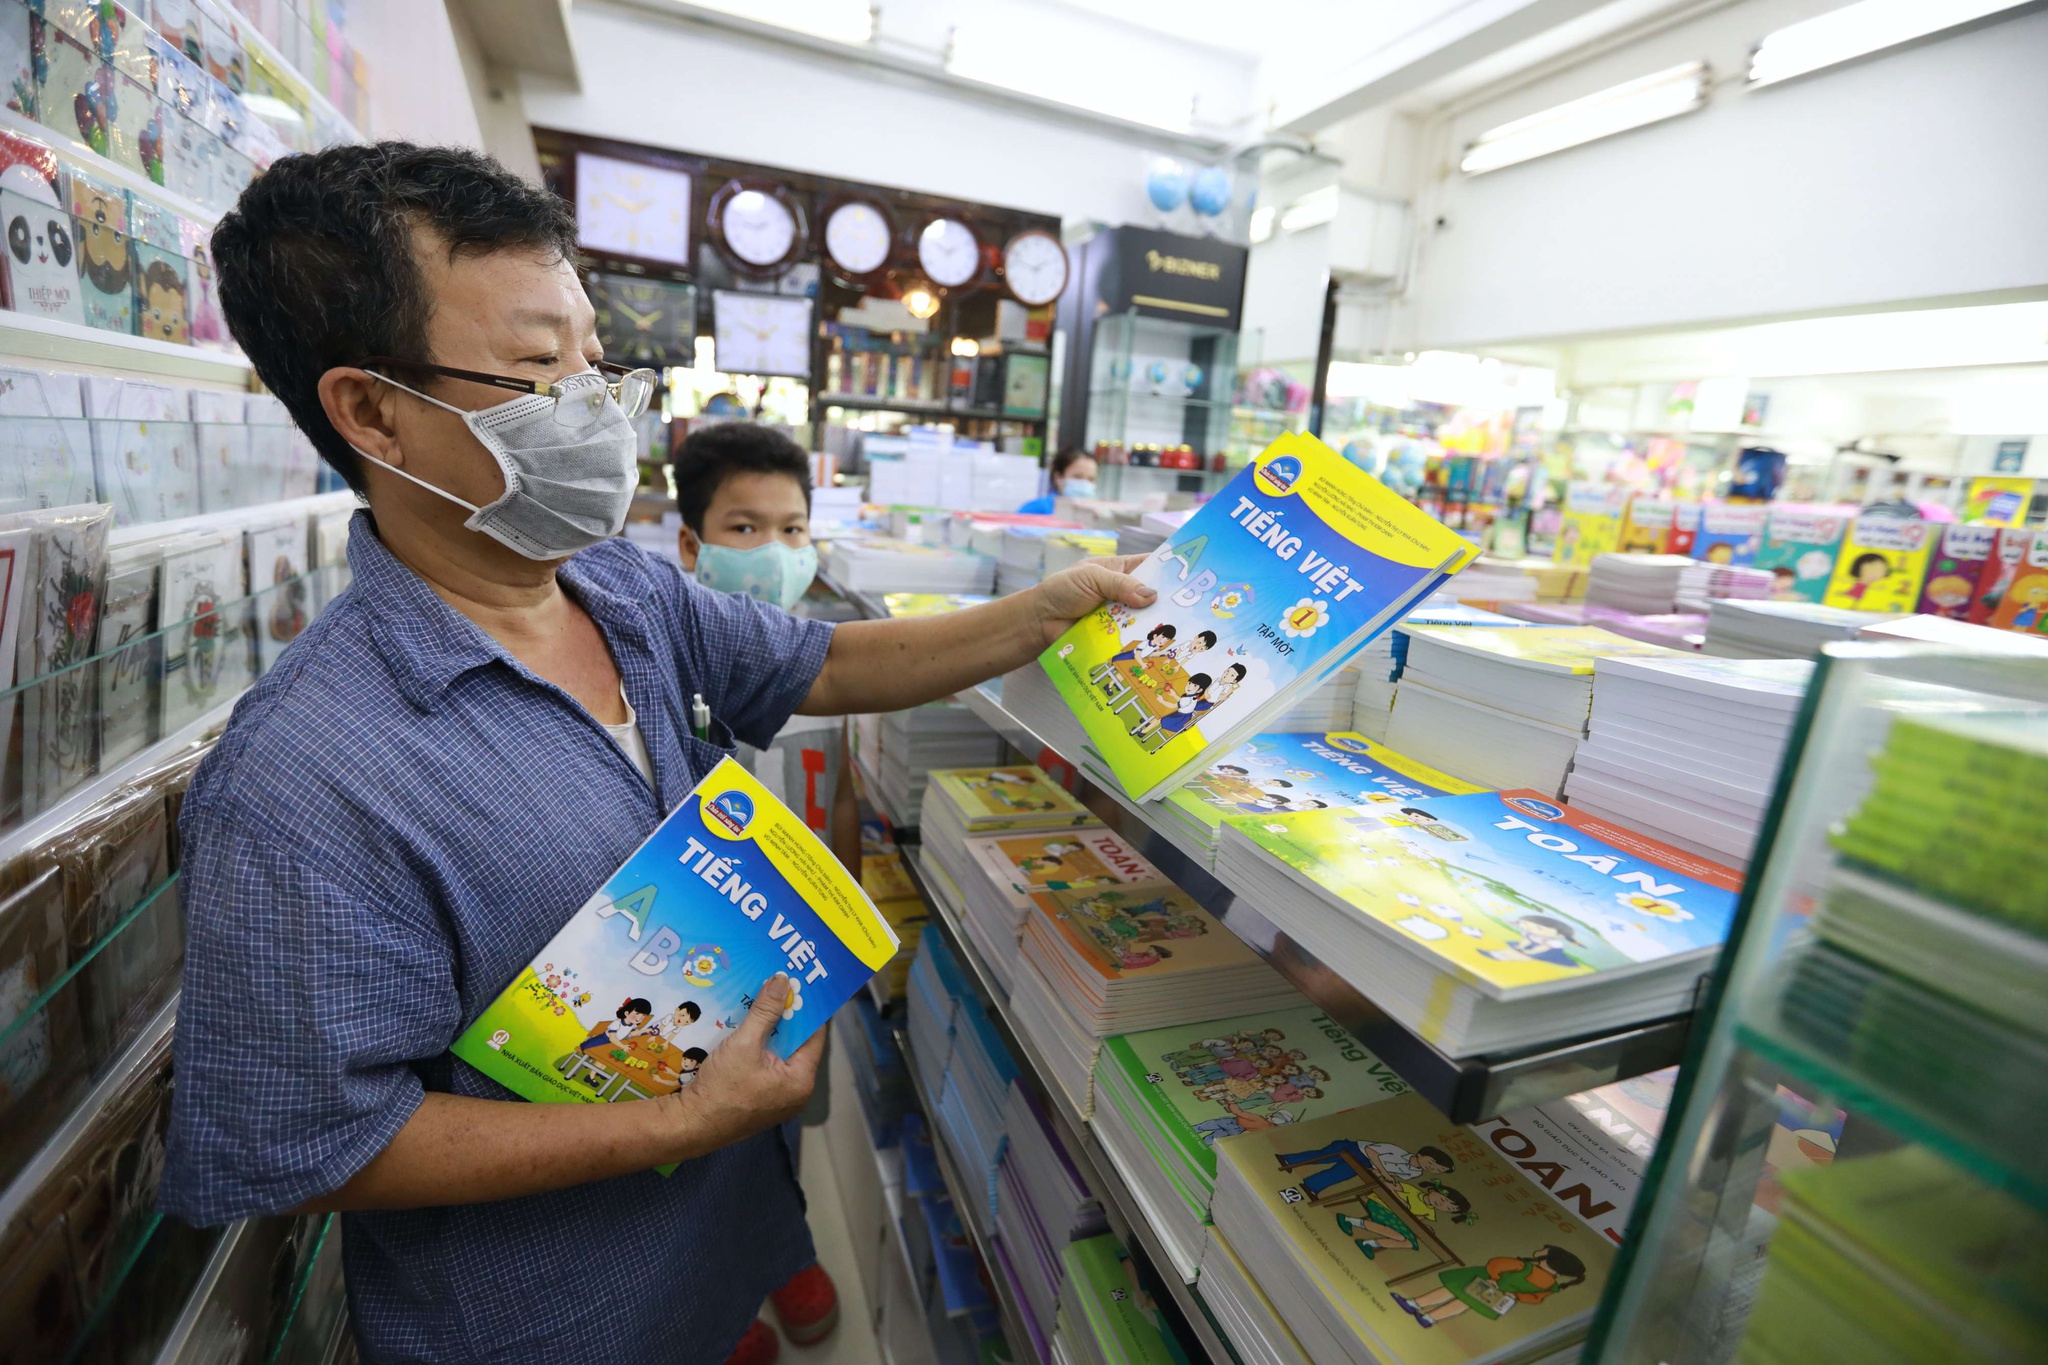 Bộ trưởng GD-ĐT ra chỉ thị giảm giá sách giáo khoa, không ép mua sách bài tập - ảnh 1